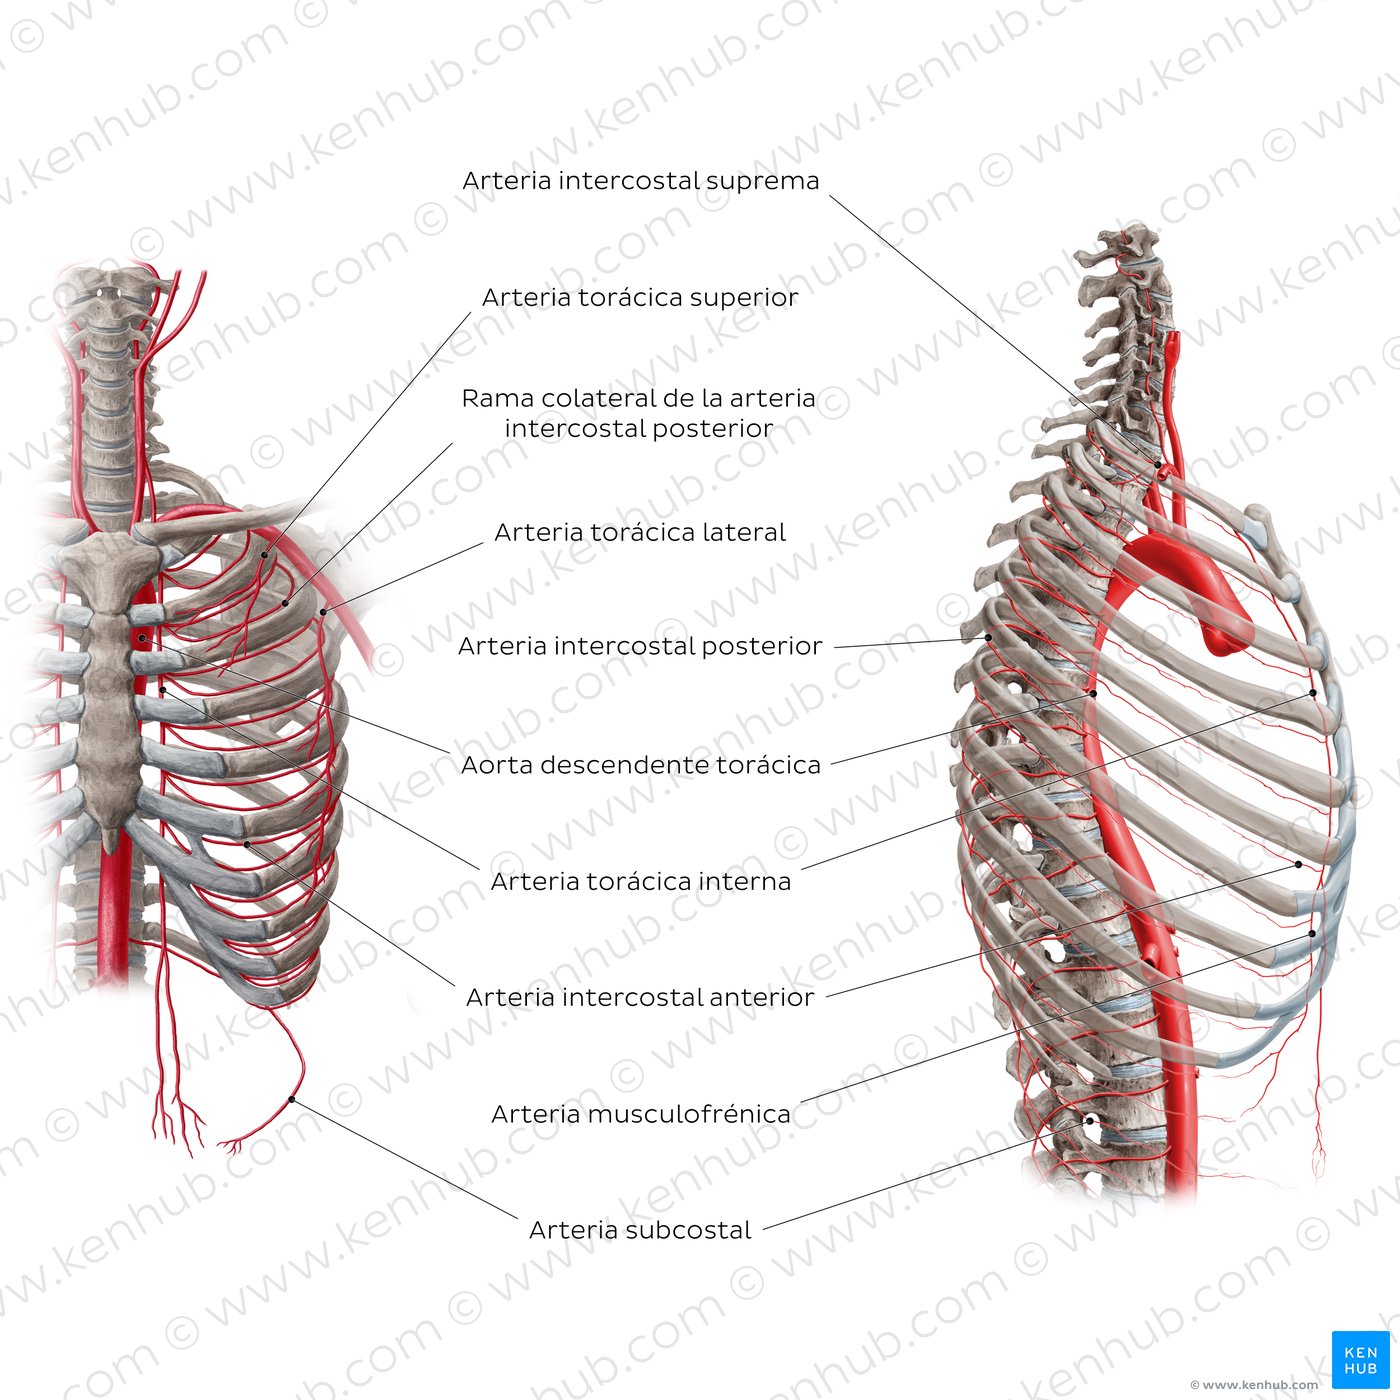 Arterias del tórax